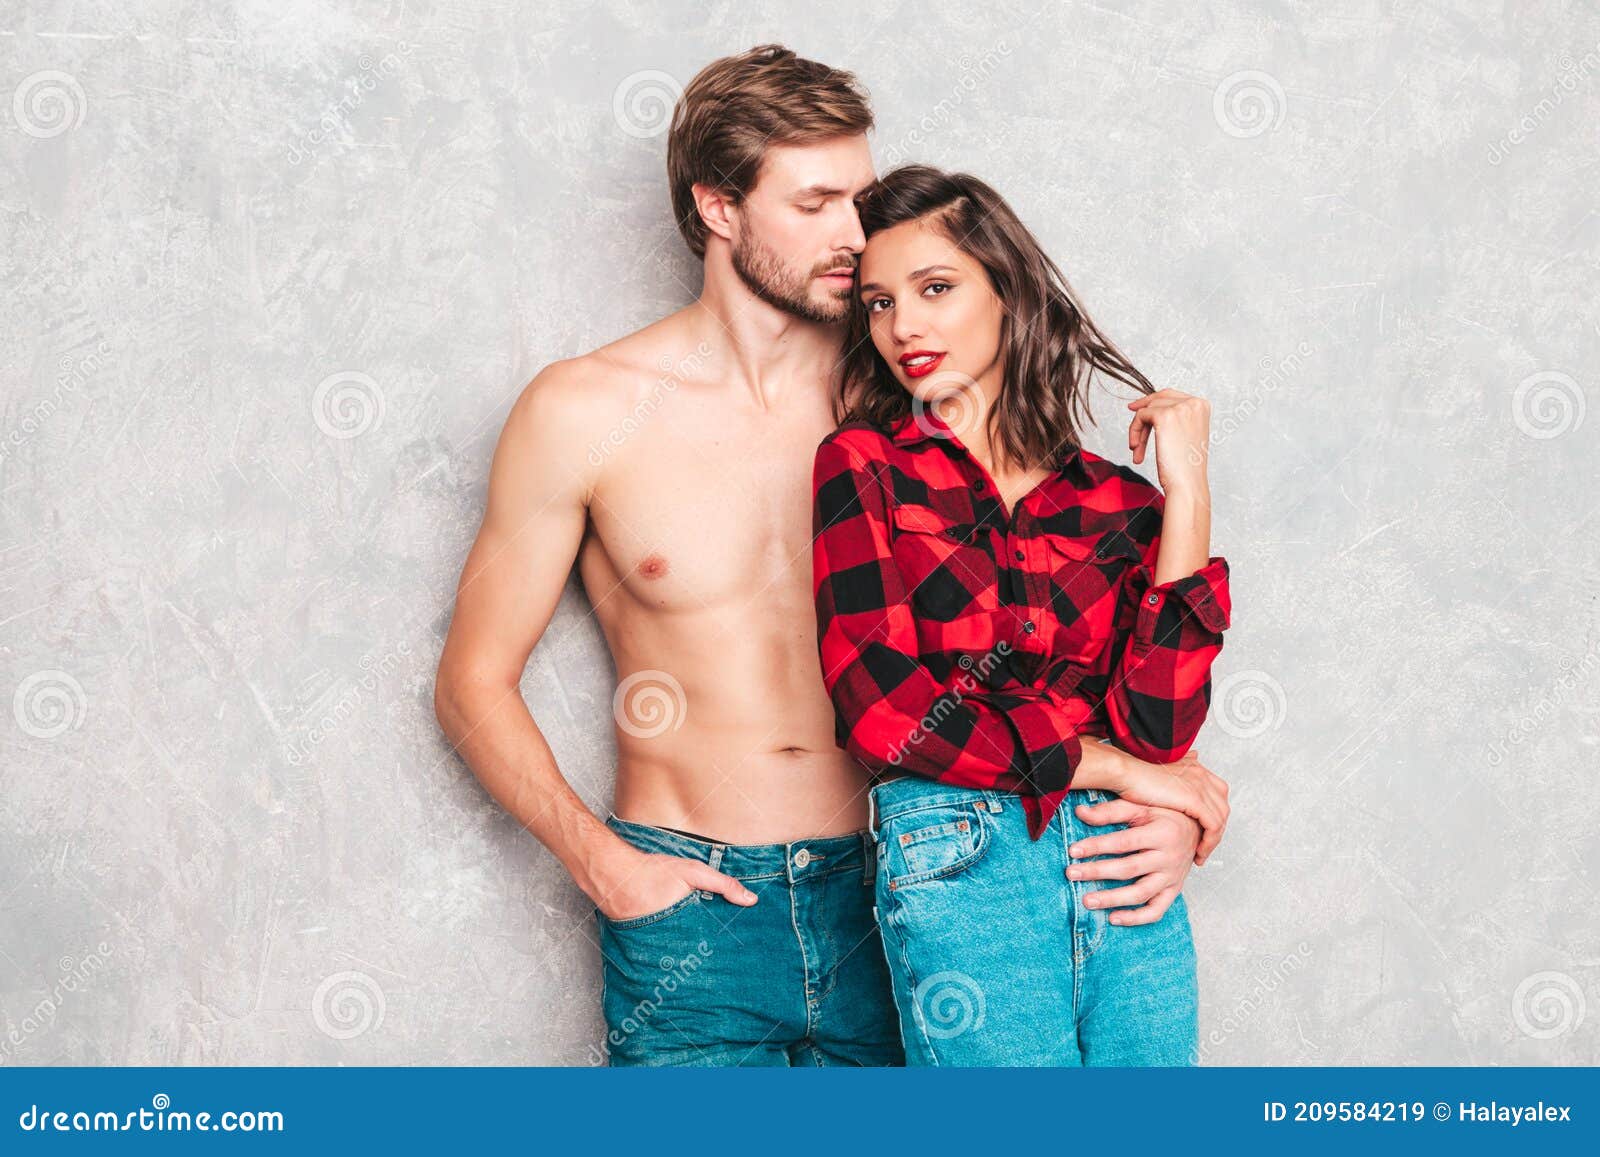 nice-looking hottie copulating with boyfriend